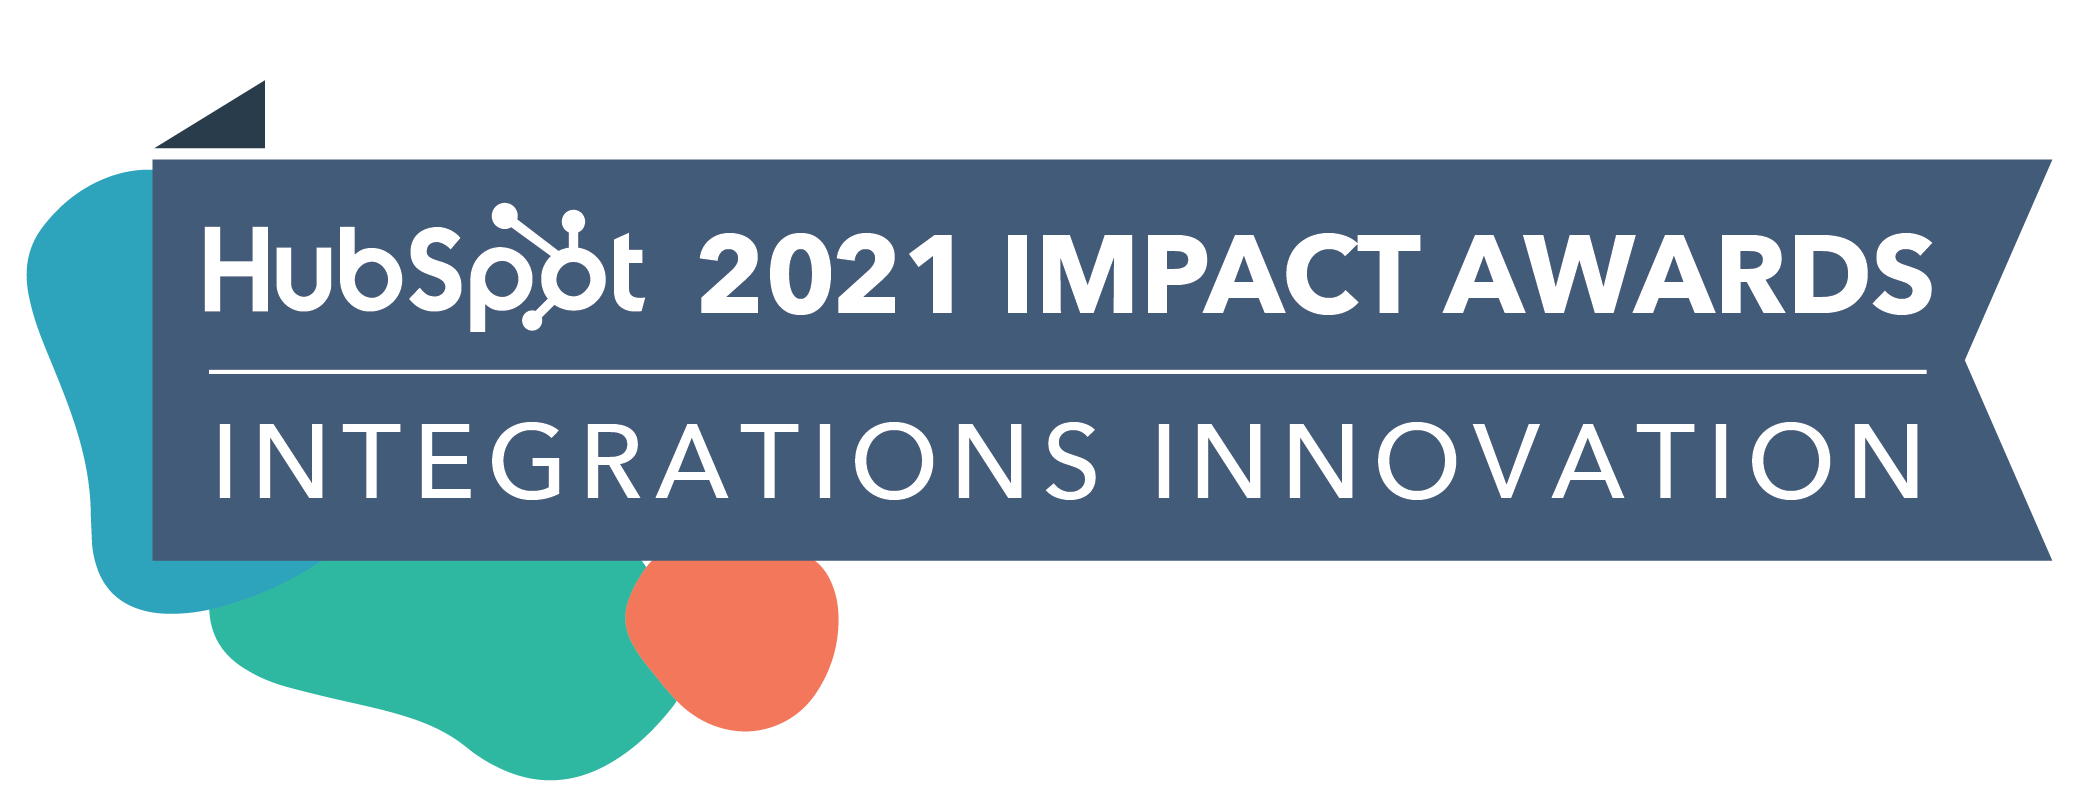 HubSpot_ImpactAwards_2021_IntegrationsInnov3